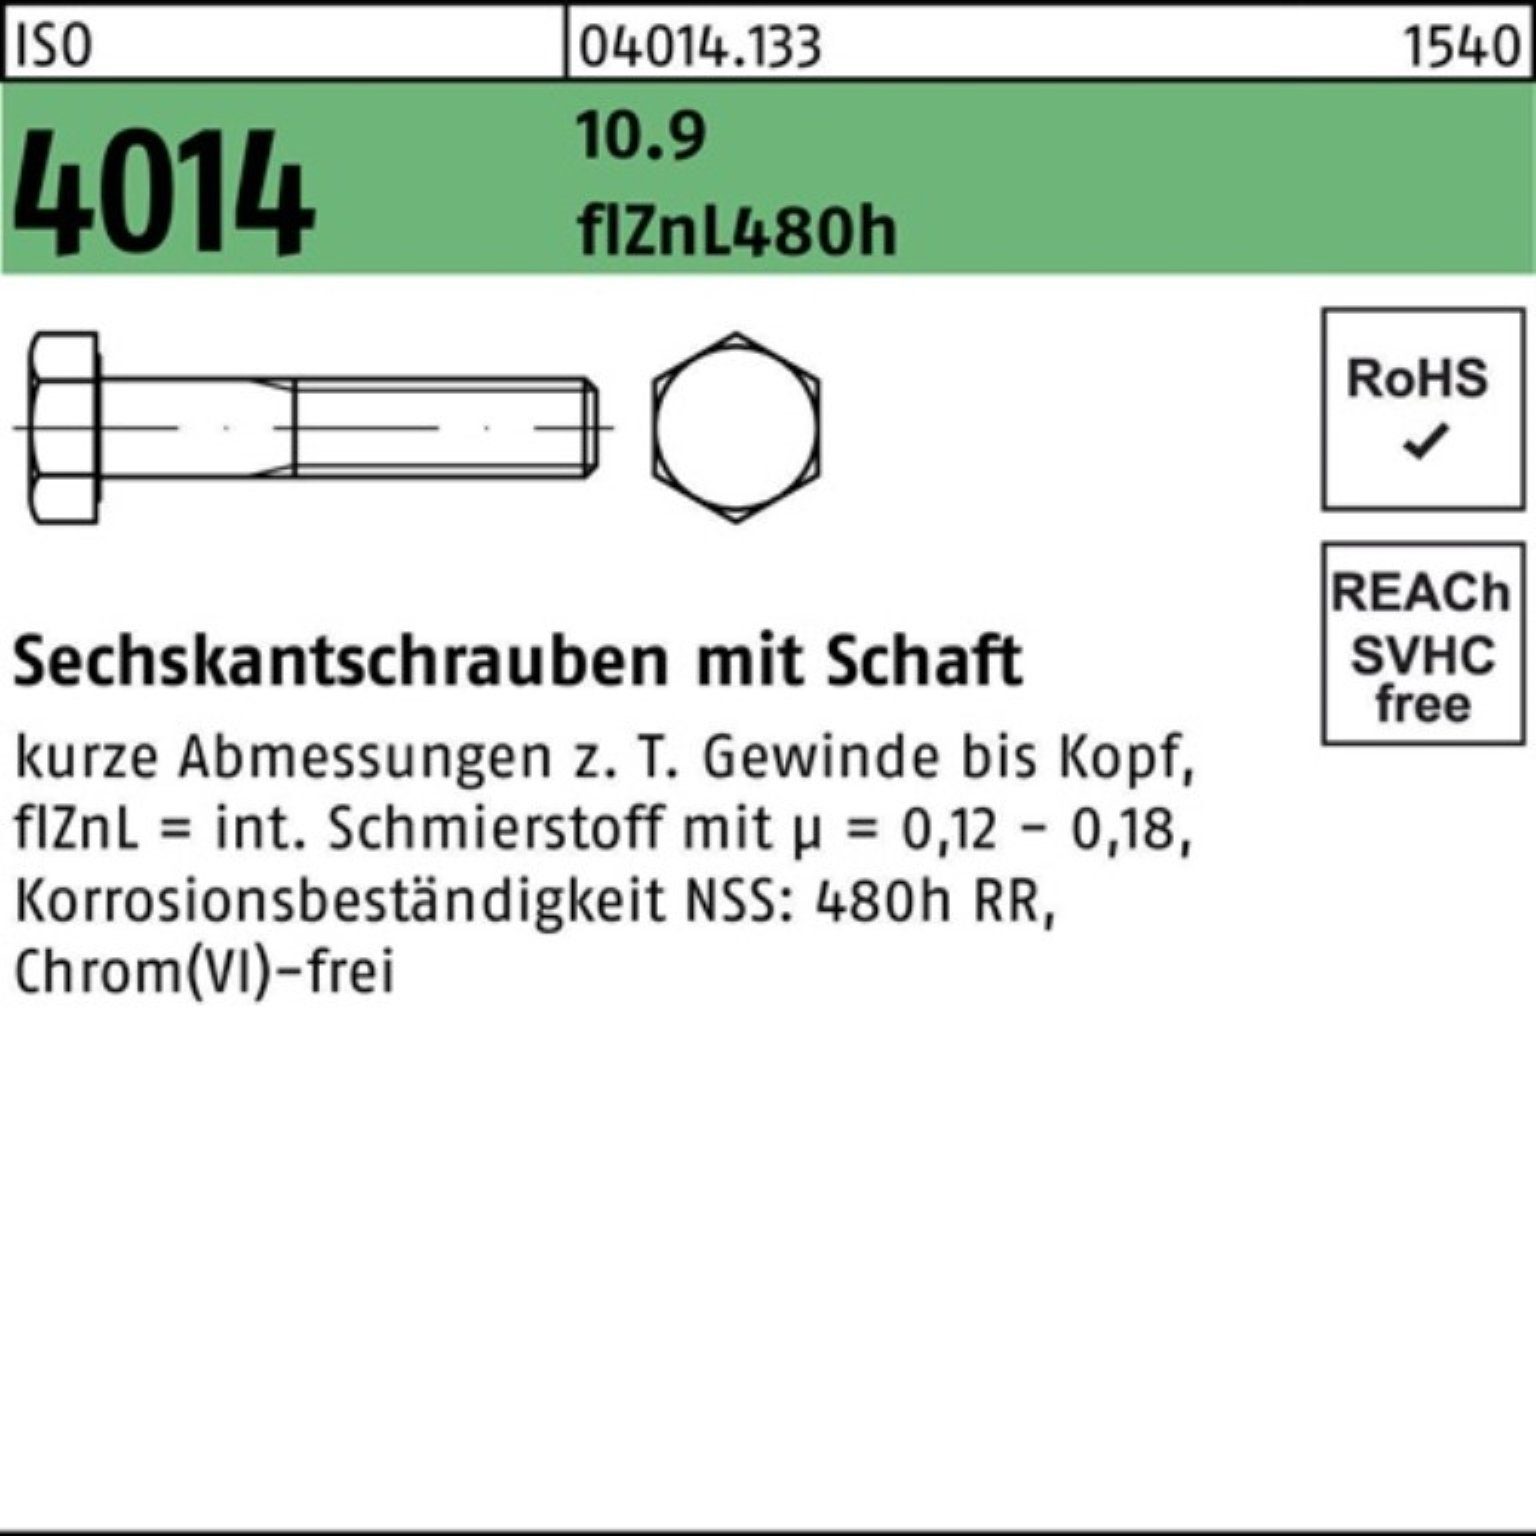 Bufab Sechskantschraube Sechskantschraube ISO Pack 4014 10.9 M24x Schaft 200 zinklamelle 100er